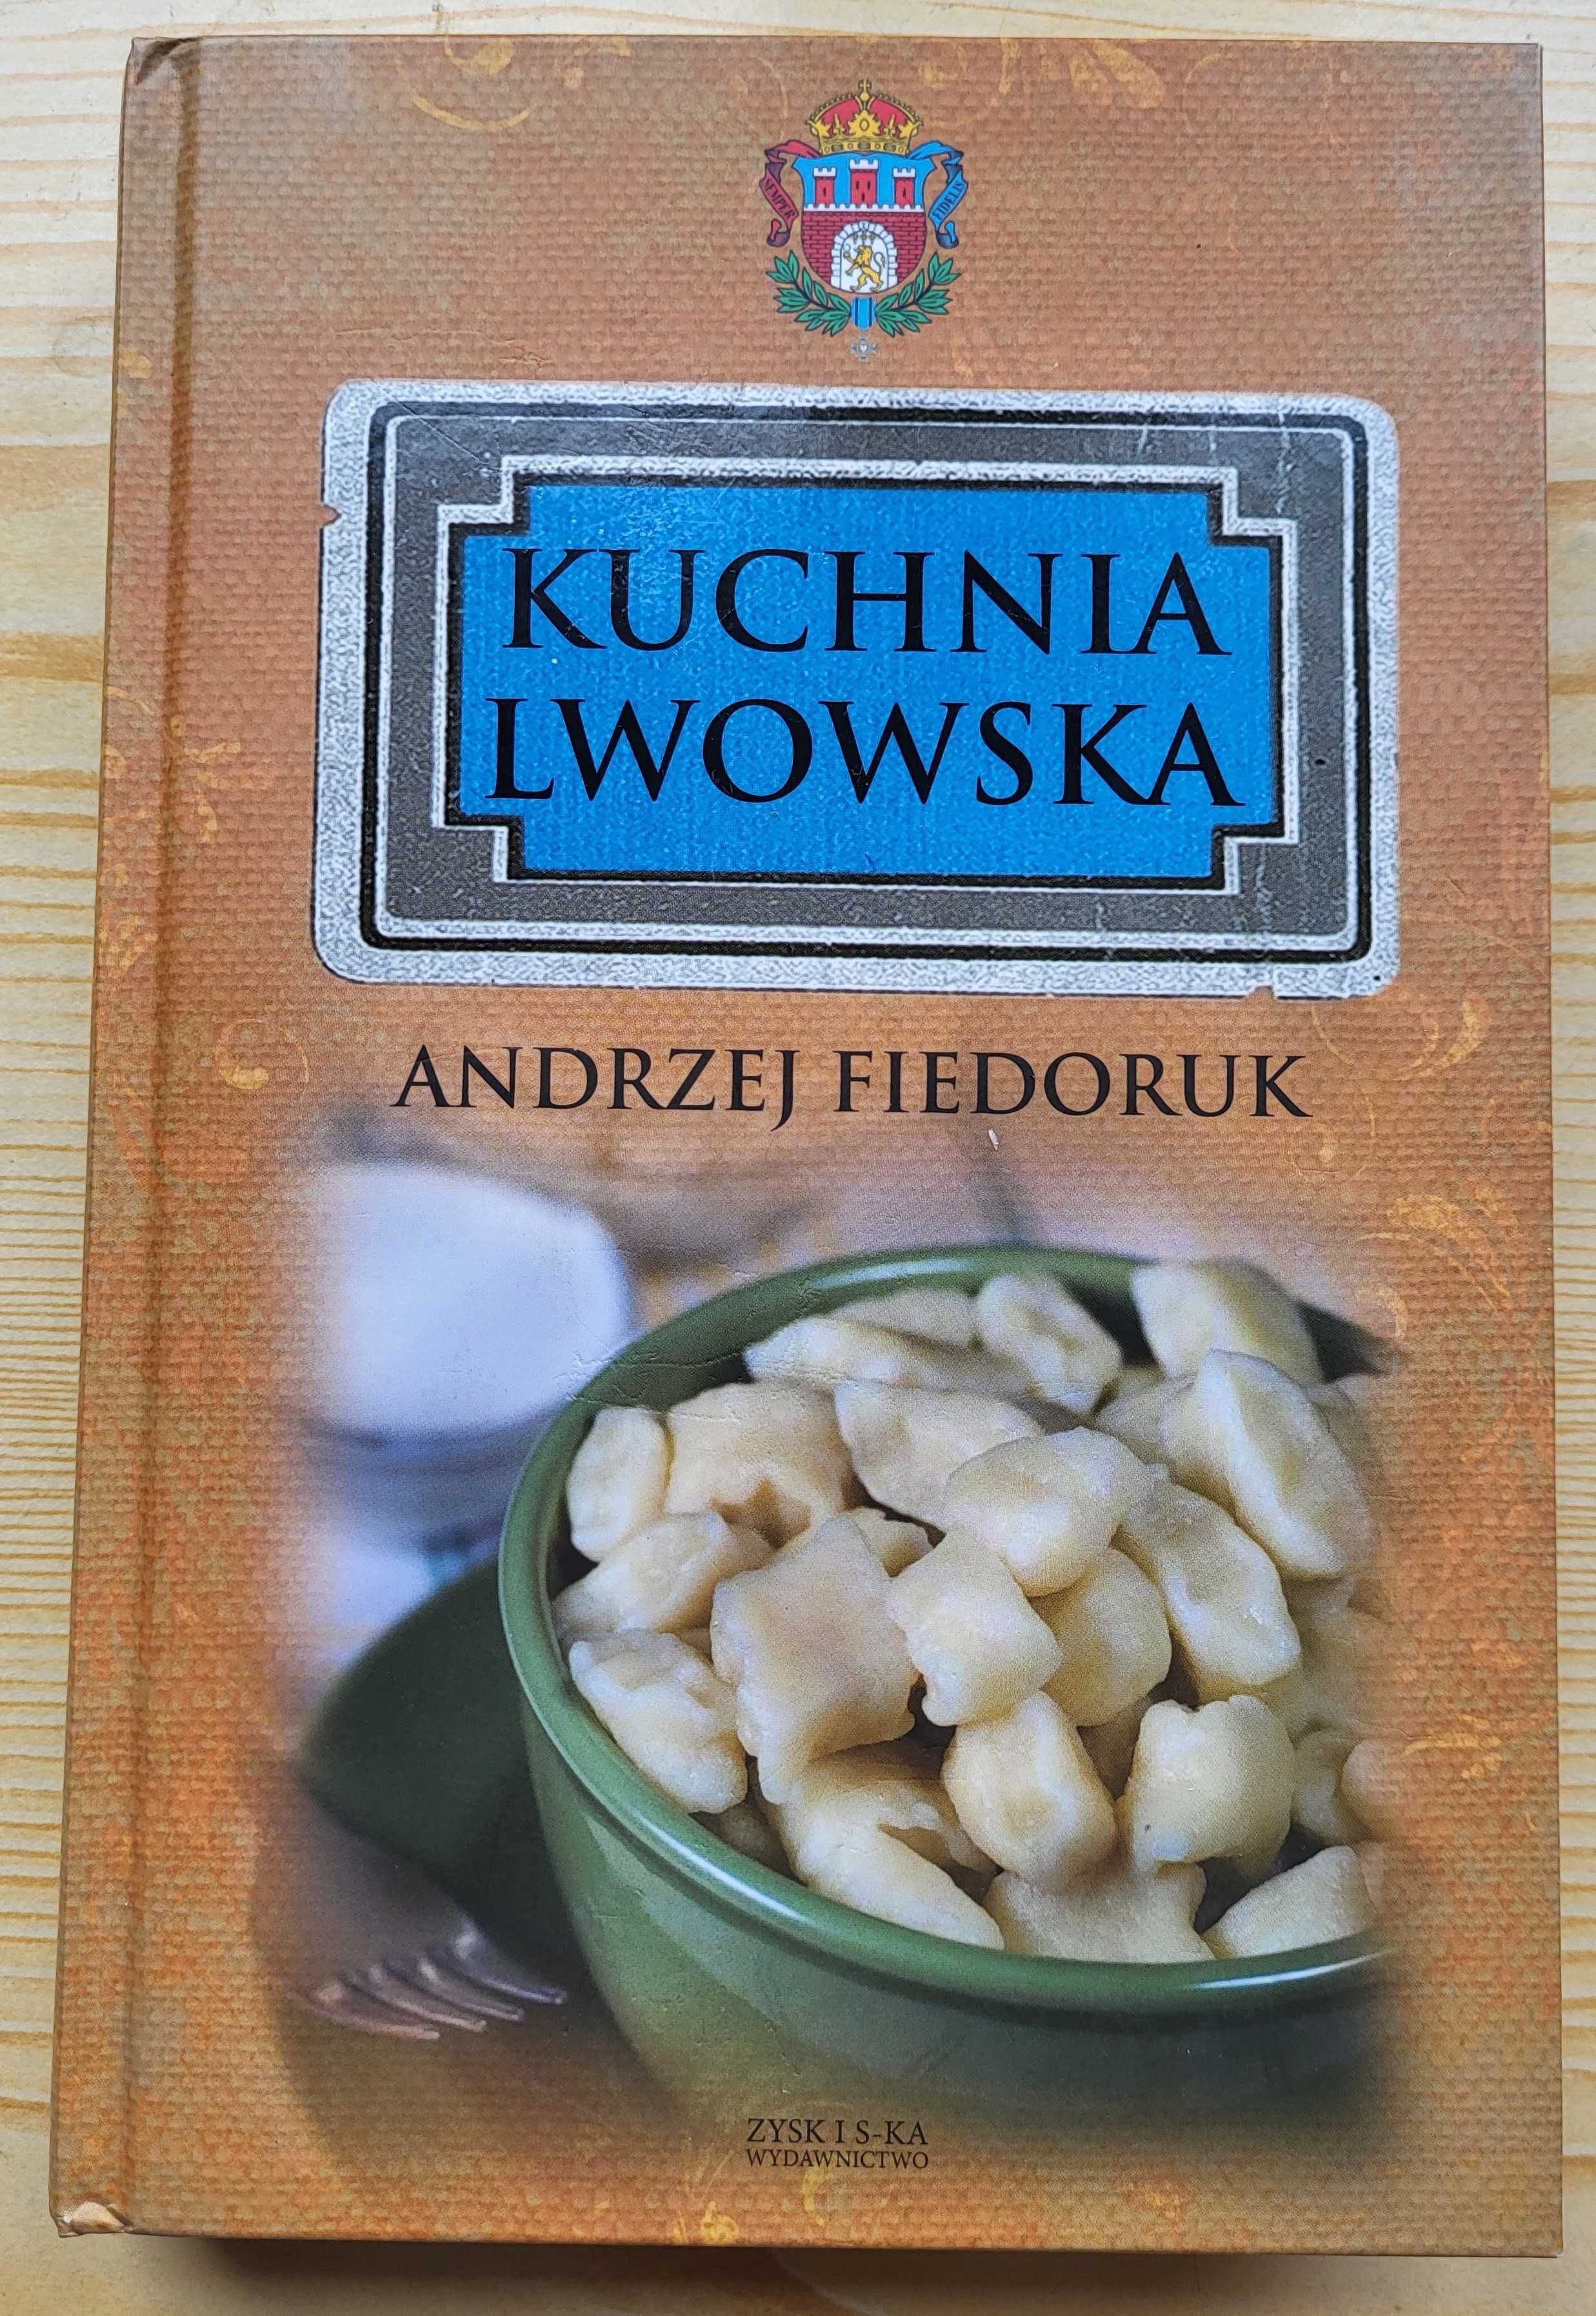 Andrzej Fiedoruk "Kuchnia lwowska" - NOWA! - NAJTANIEJ na RYNKU!